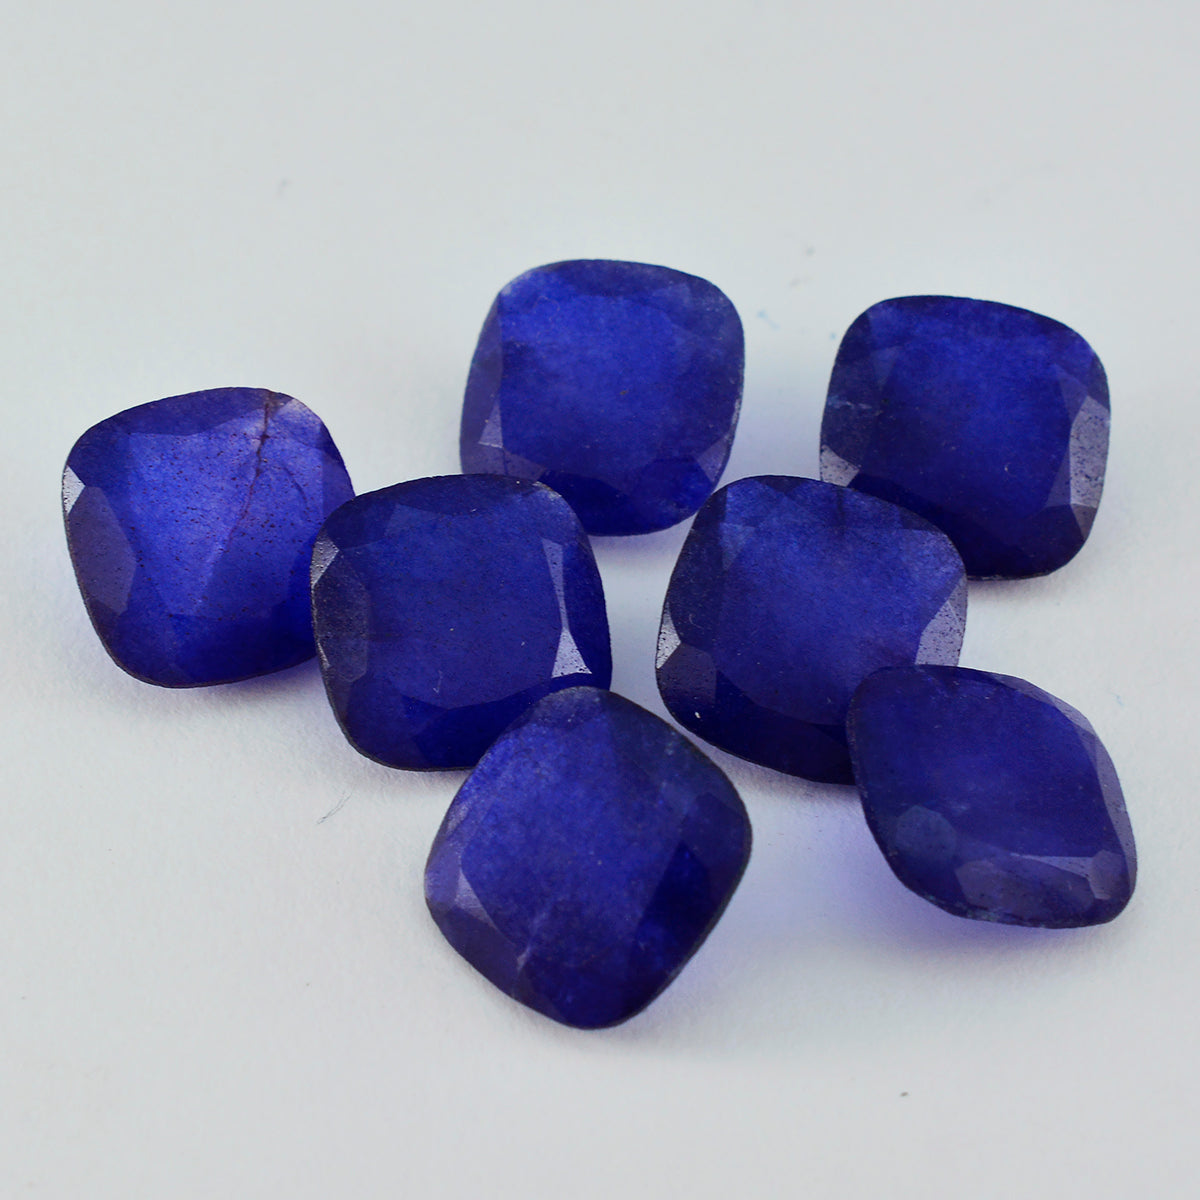 Riyogems 1 pieza de jaspe azul natural facetado de 0.394 x 0.394 in, forma de cojín A+1 piedra preciosa suelta de calidad